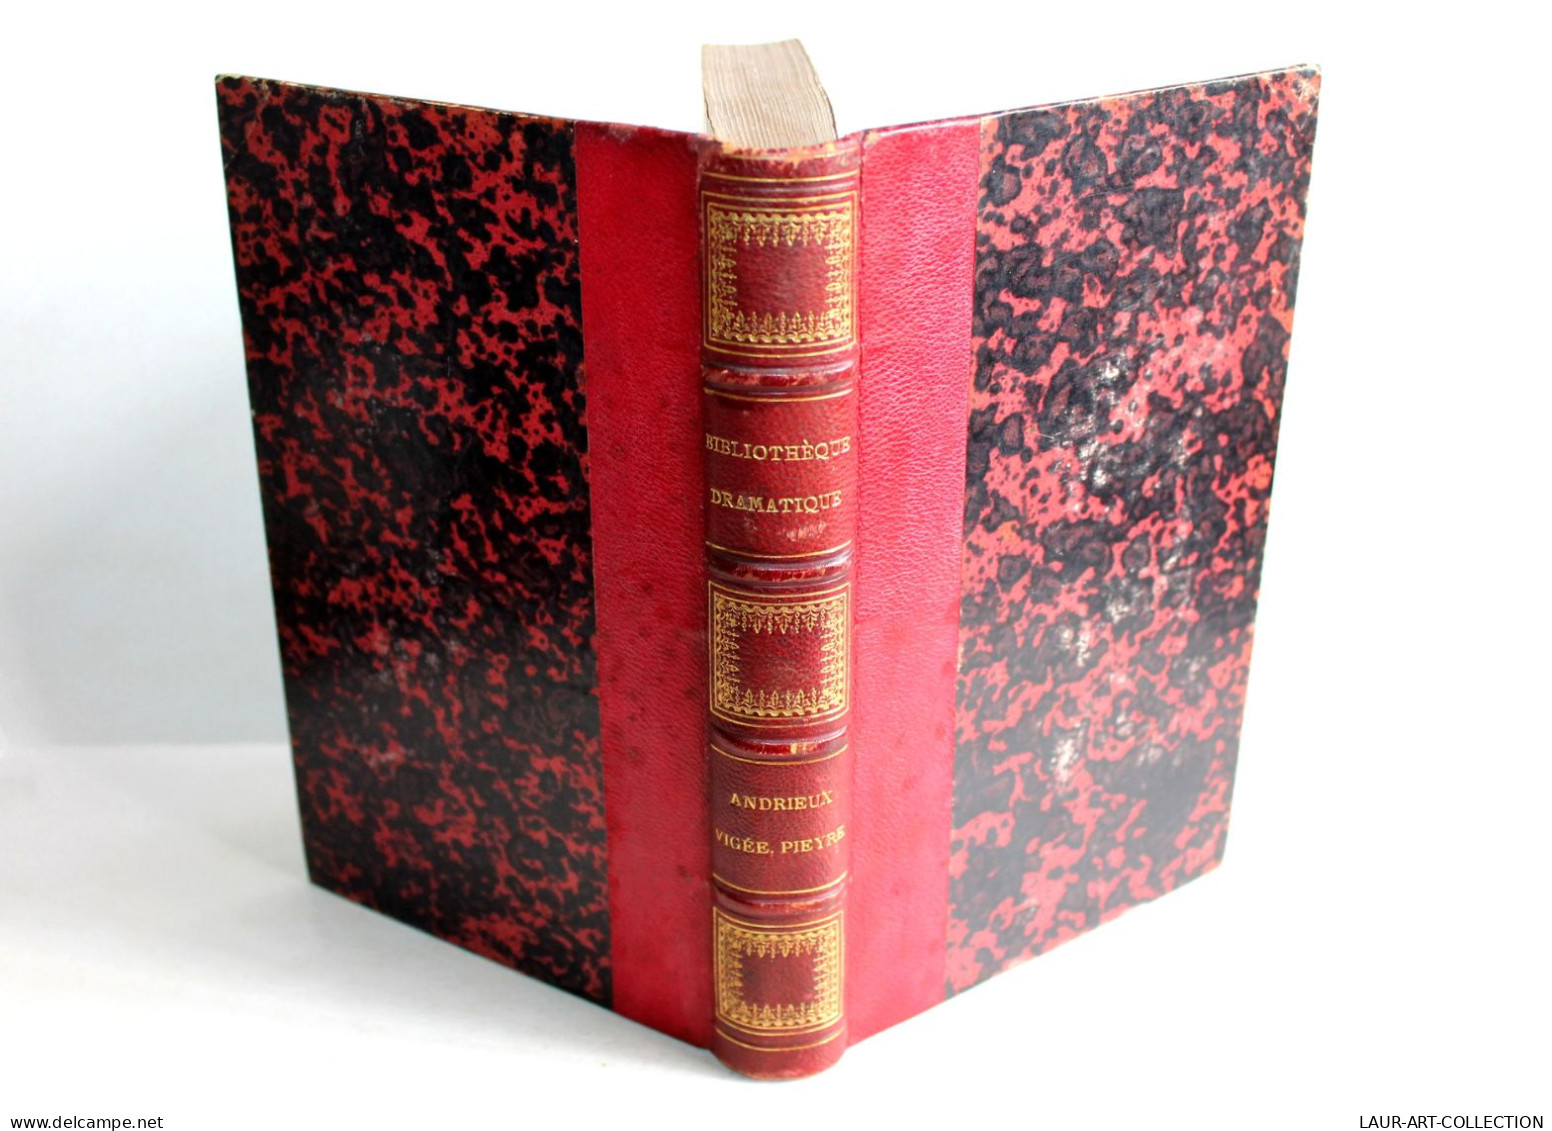 BIBLIOTHEQUE DRAMATIQUE Ou REPERTOIRE UNIVERSEL THEATRE FRANCAIS Par NODIER 1824 / ANCIEN LIVRE XIXe SIECLE (1803.163) - Franse Schrijvers